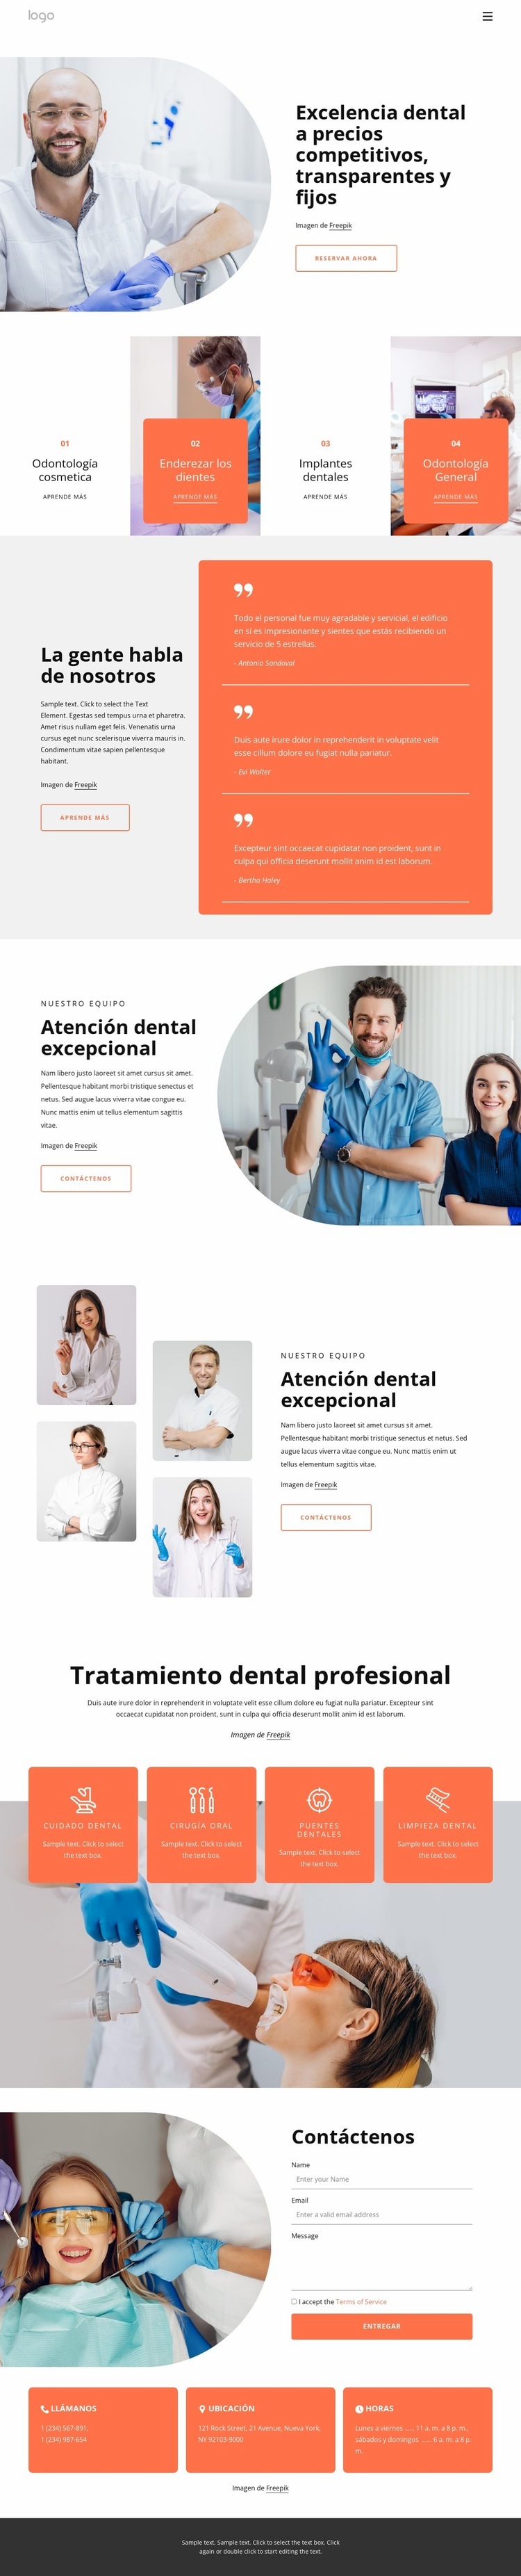 Excelencia dental Diseño de páginas web